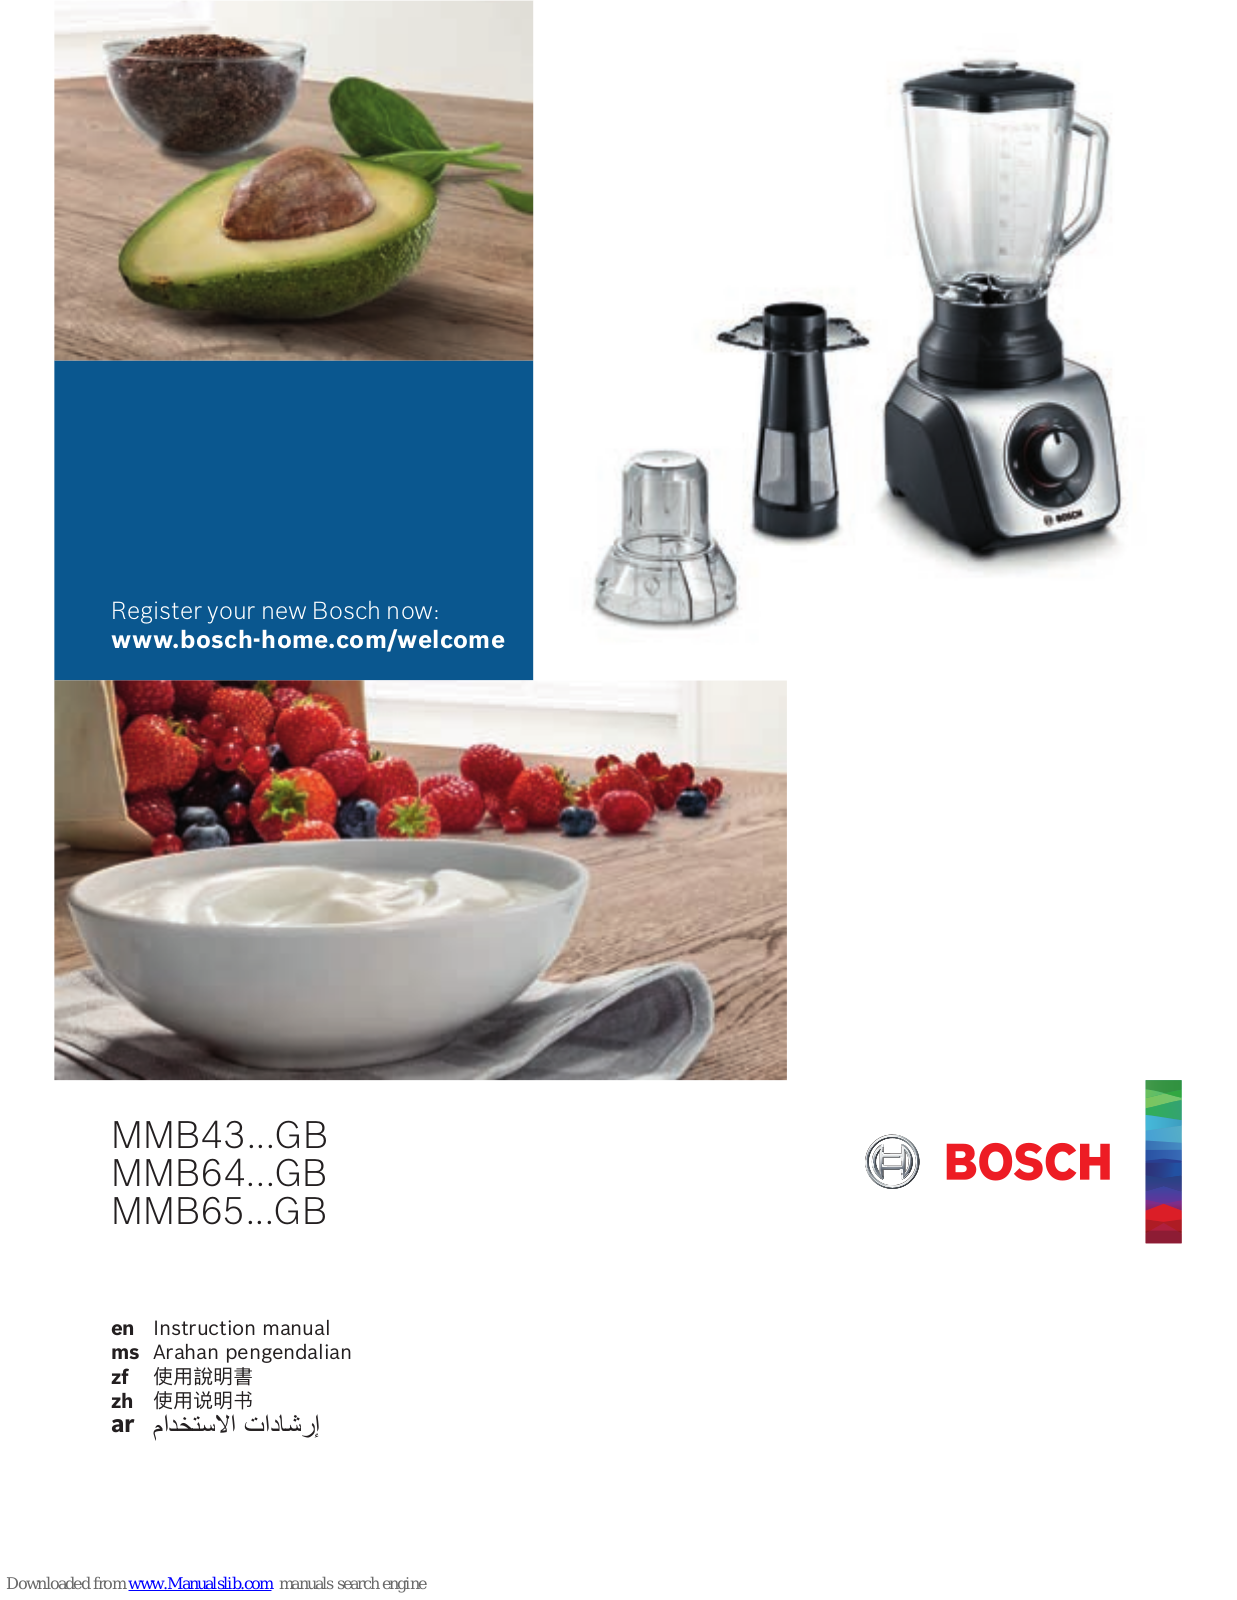 Bosch MMB43...GB, MMB64...GB, MMB65...GB Instruction Manual